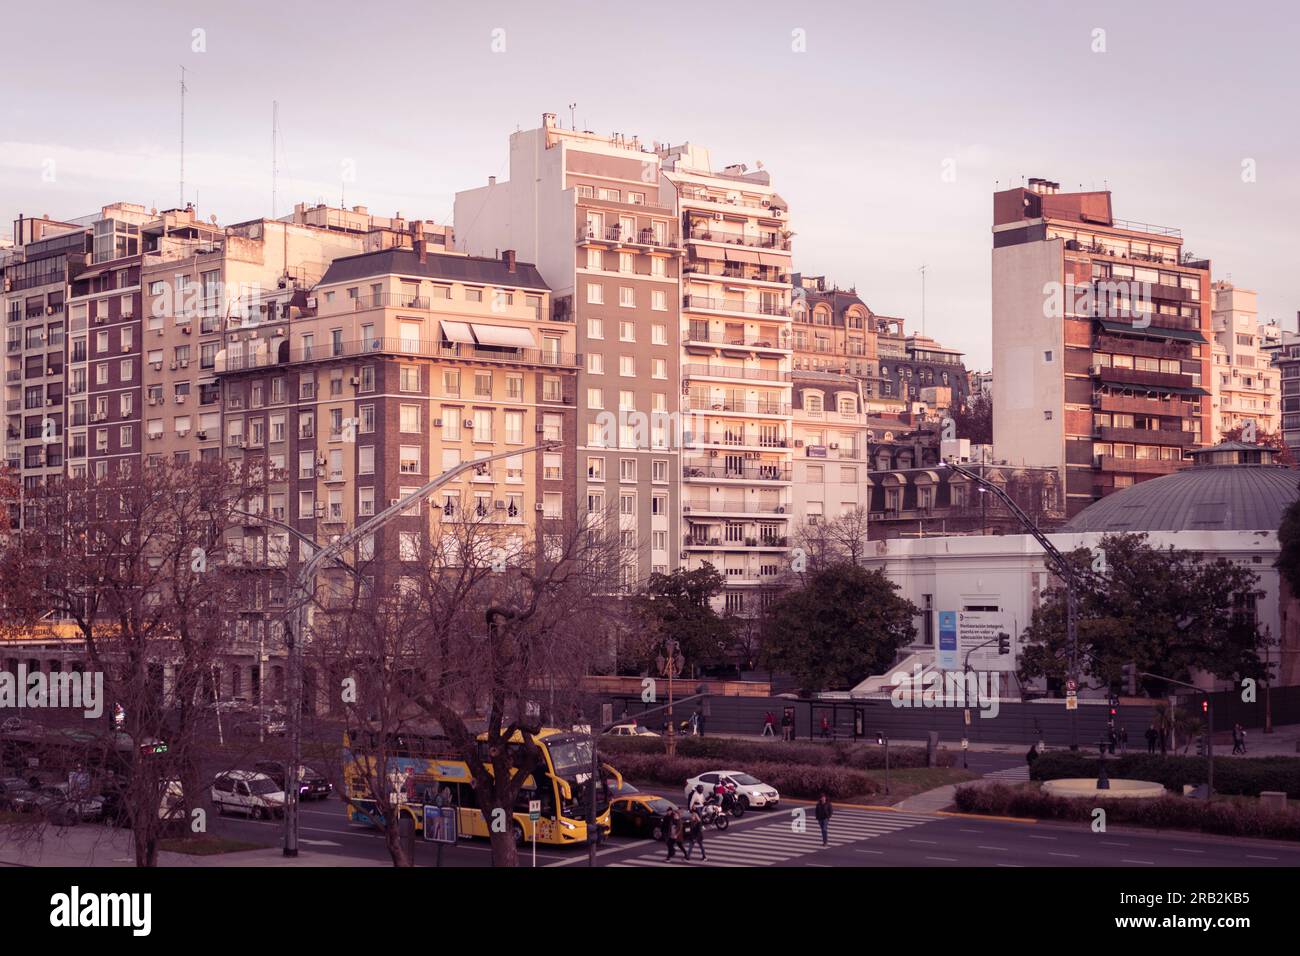 City buildings near the Presidente Alcorta Avenue, Recoleta, Buenos Aires Stock Photo